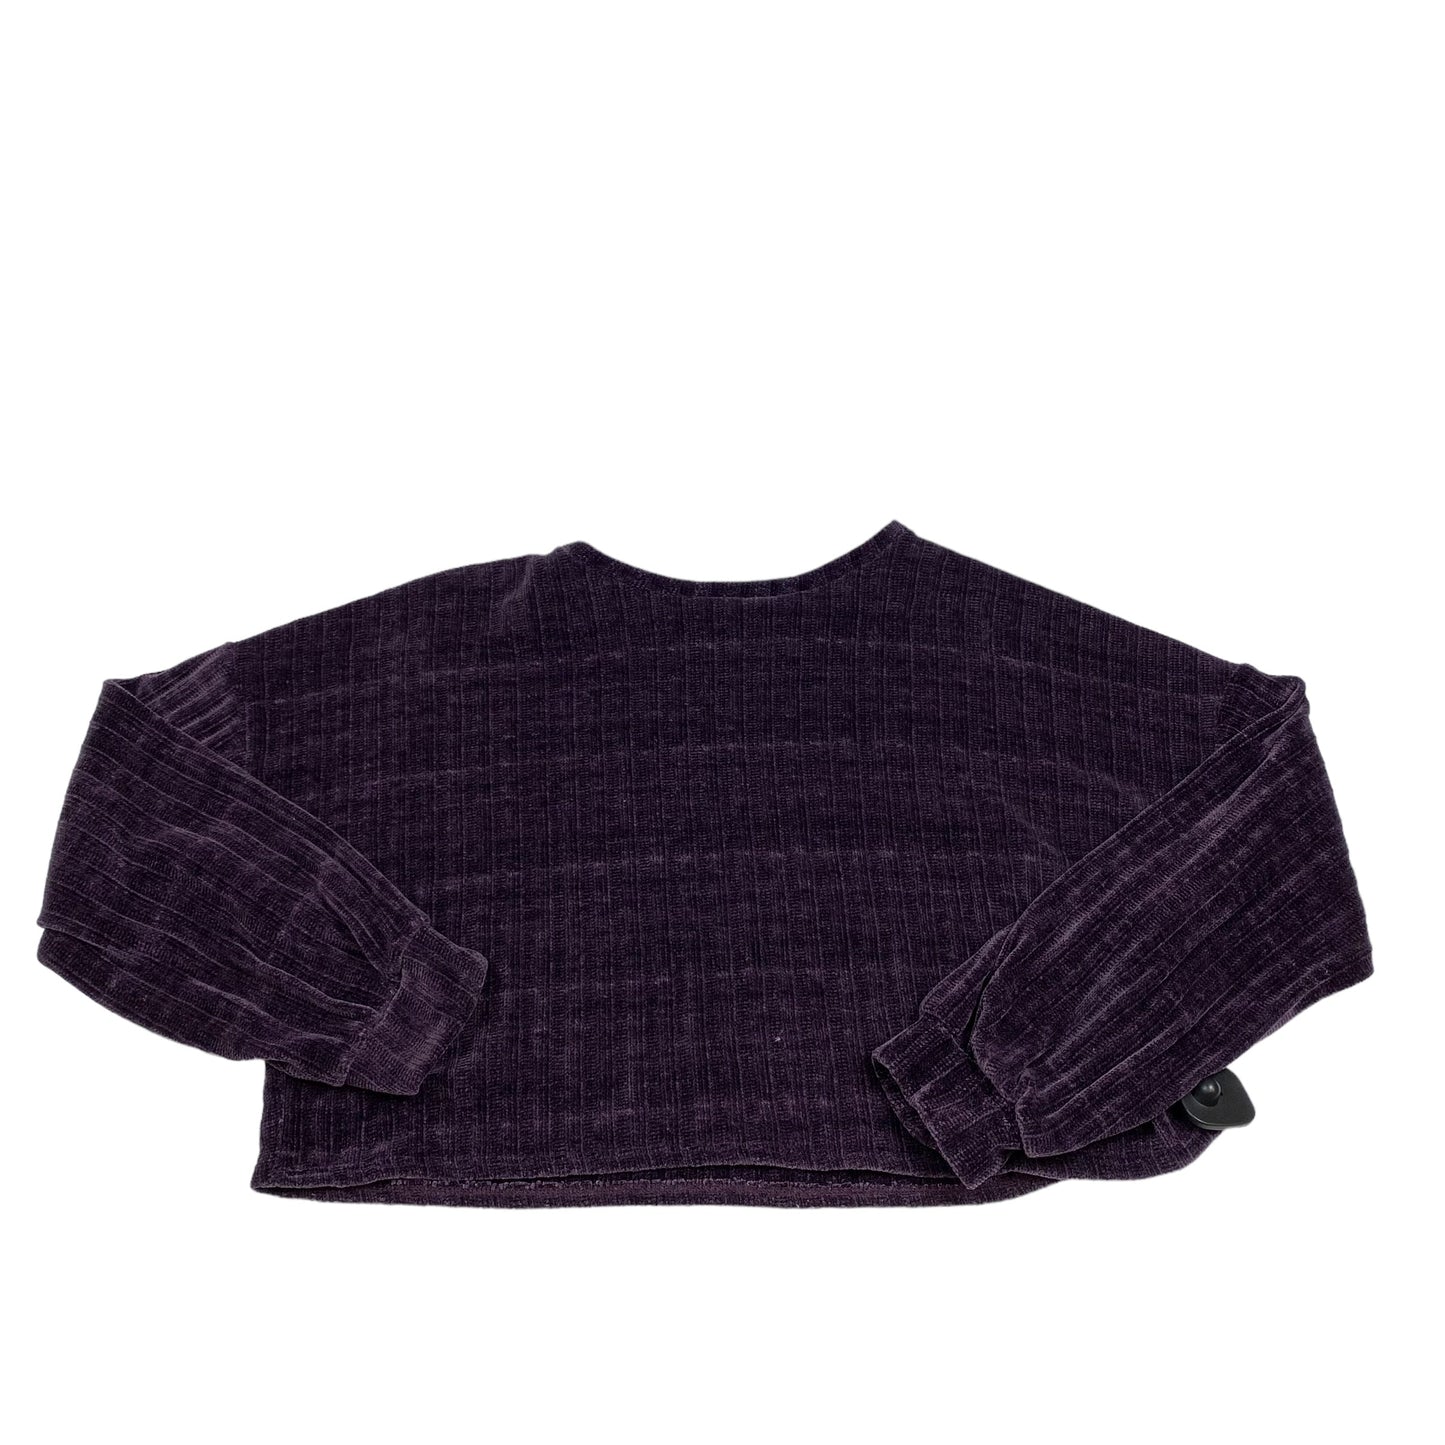 Sweater By Newbury Kustom  Size: M